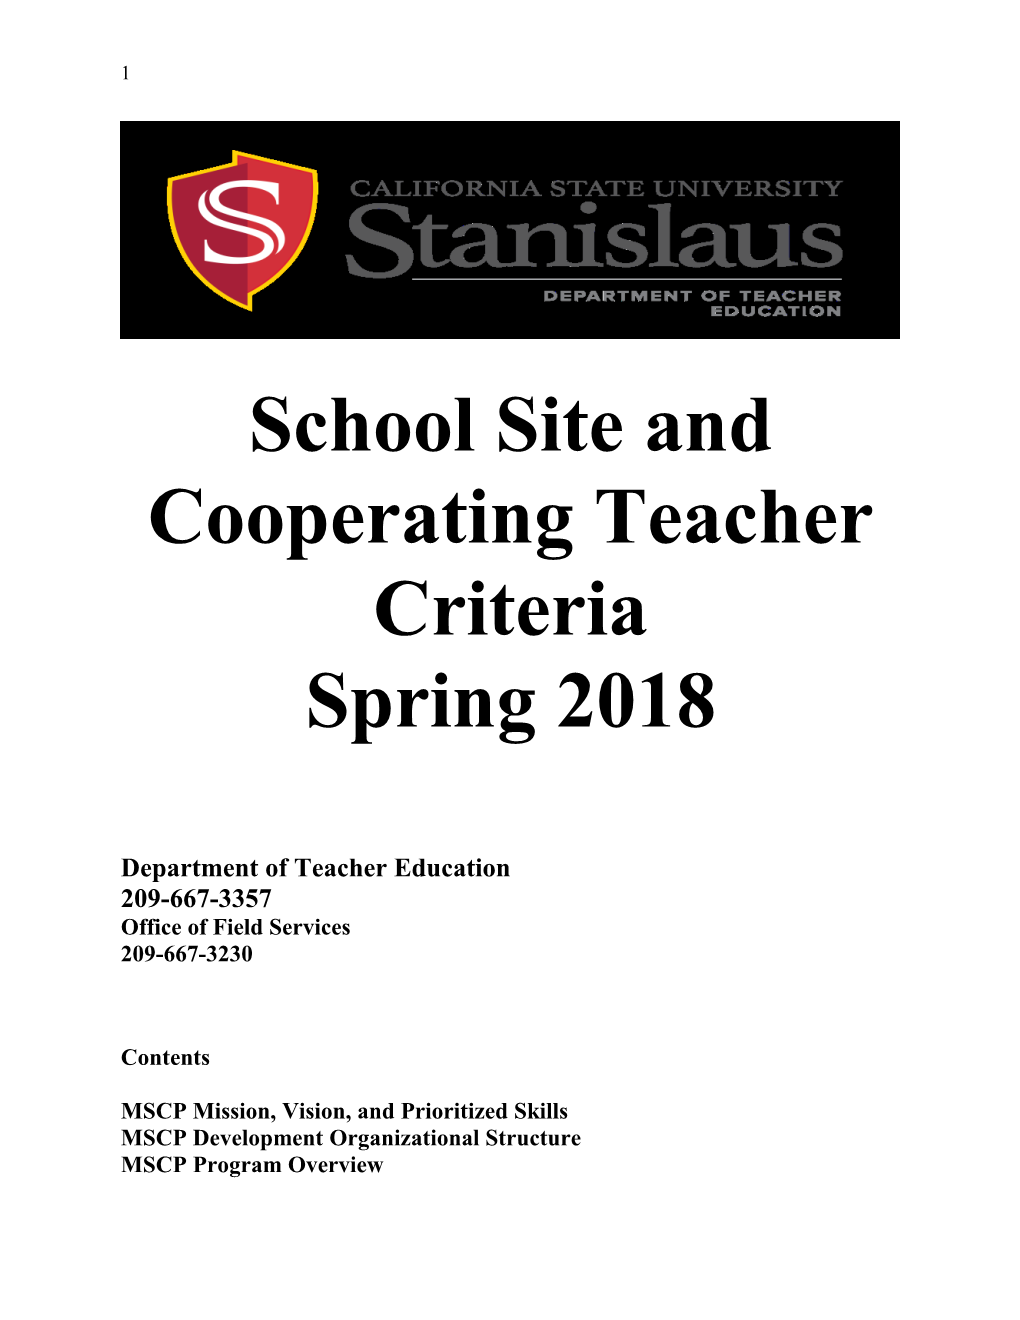 School Site and Cooperating Teacher Criteria